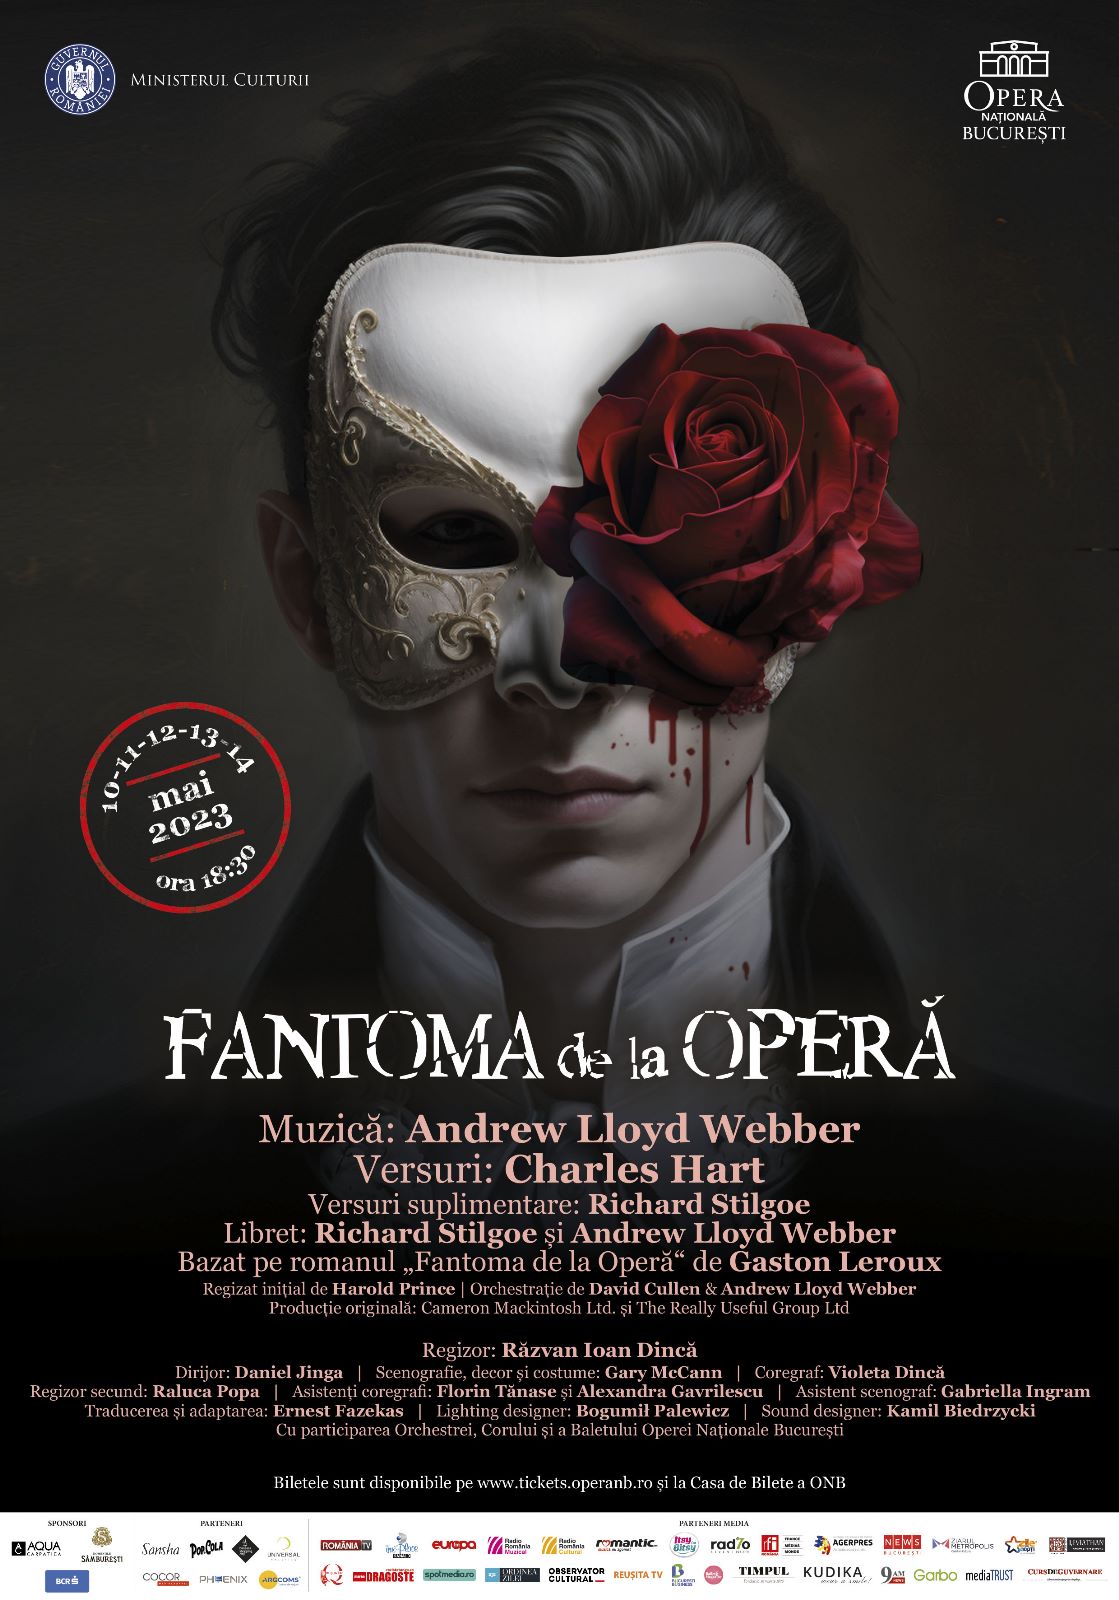 Fantoma de la Opera, inchis pe Broadway, deschis la Bucuresti